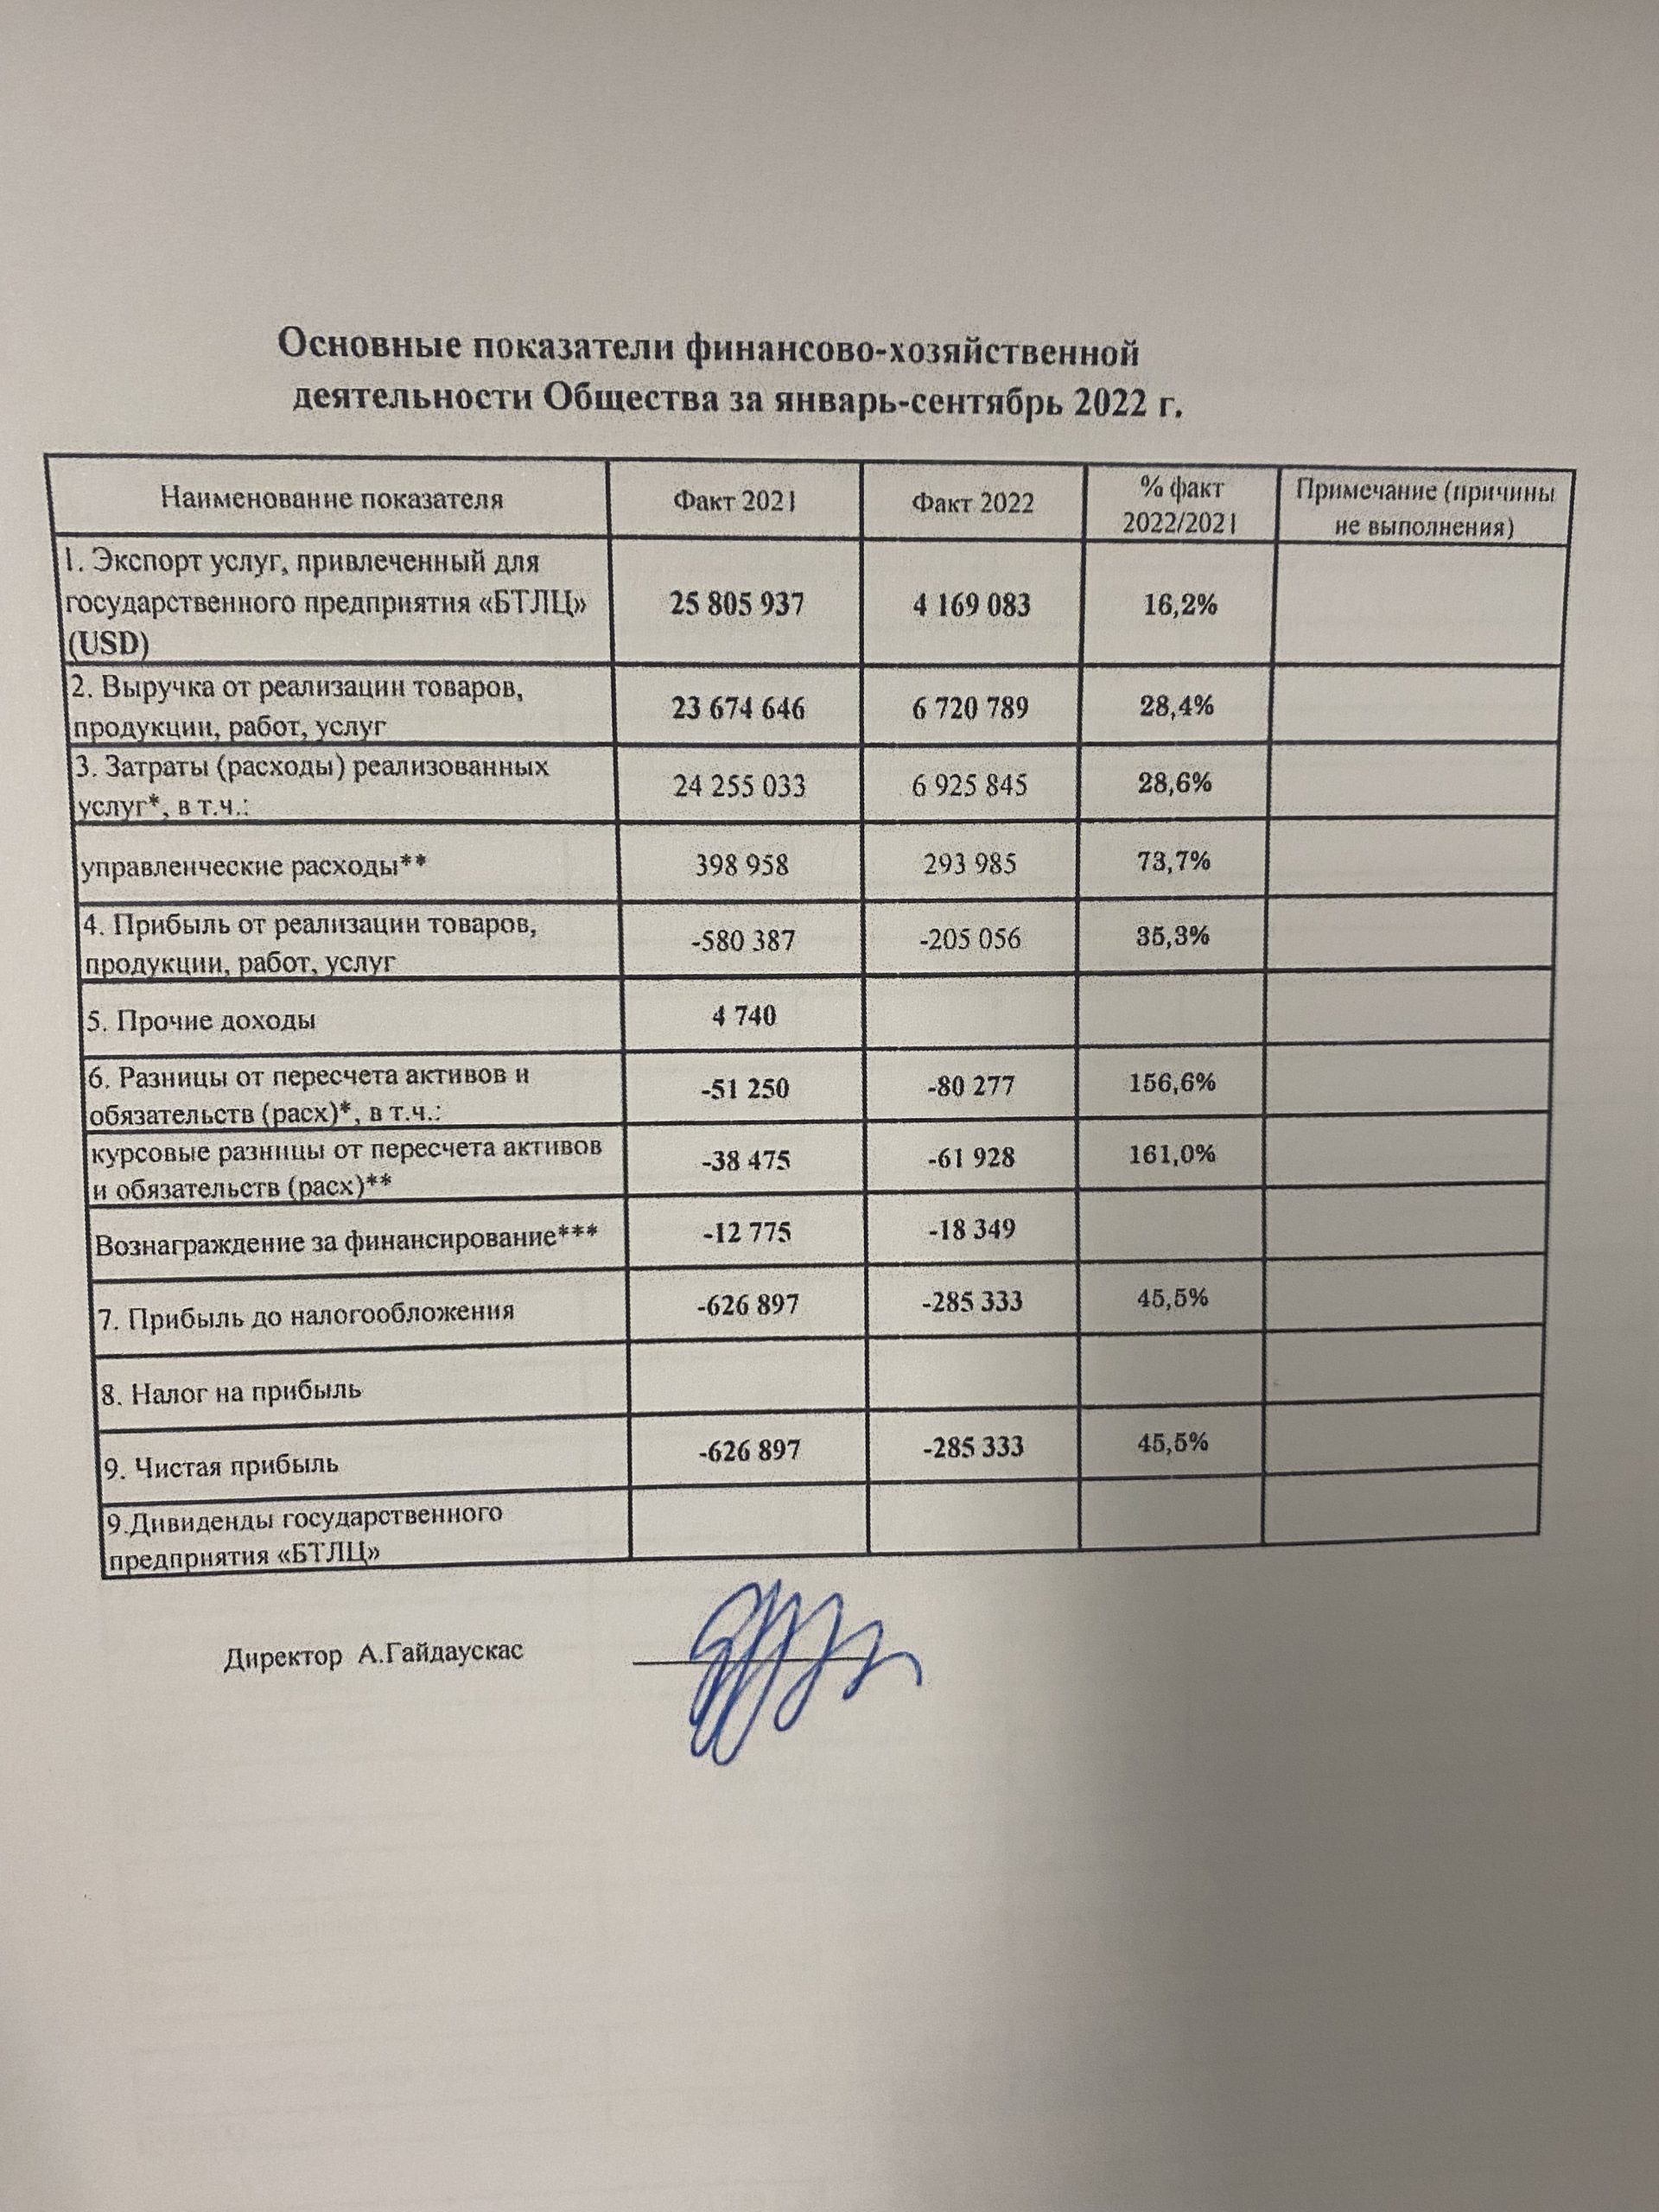 Основные показатели финансово-хозяйственной деятельности Belintertrans Baltic за январь-сентябрь 2022 года